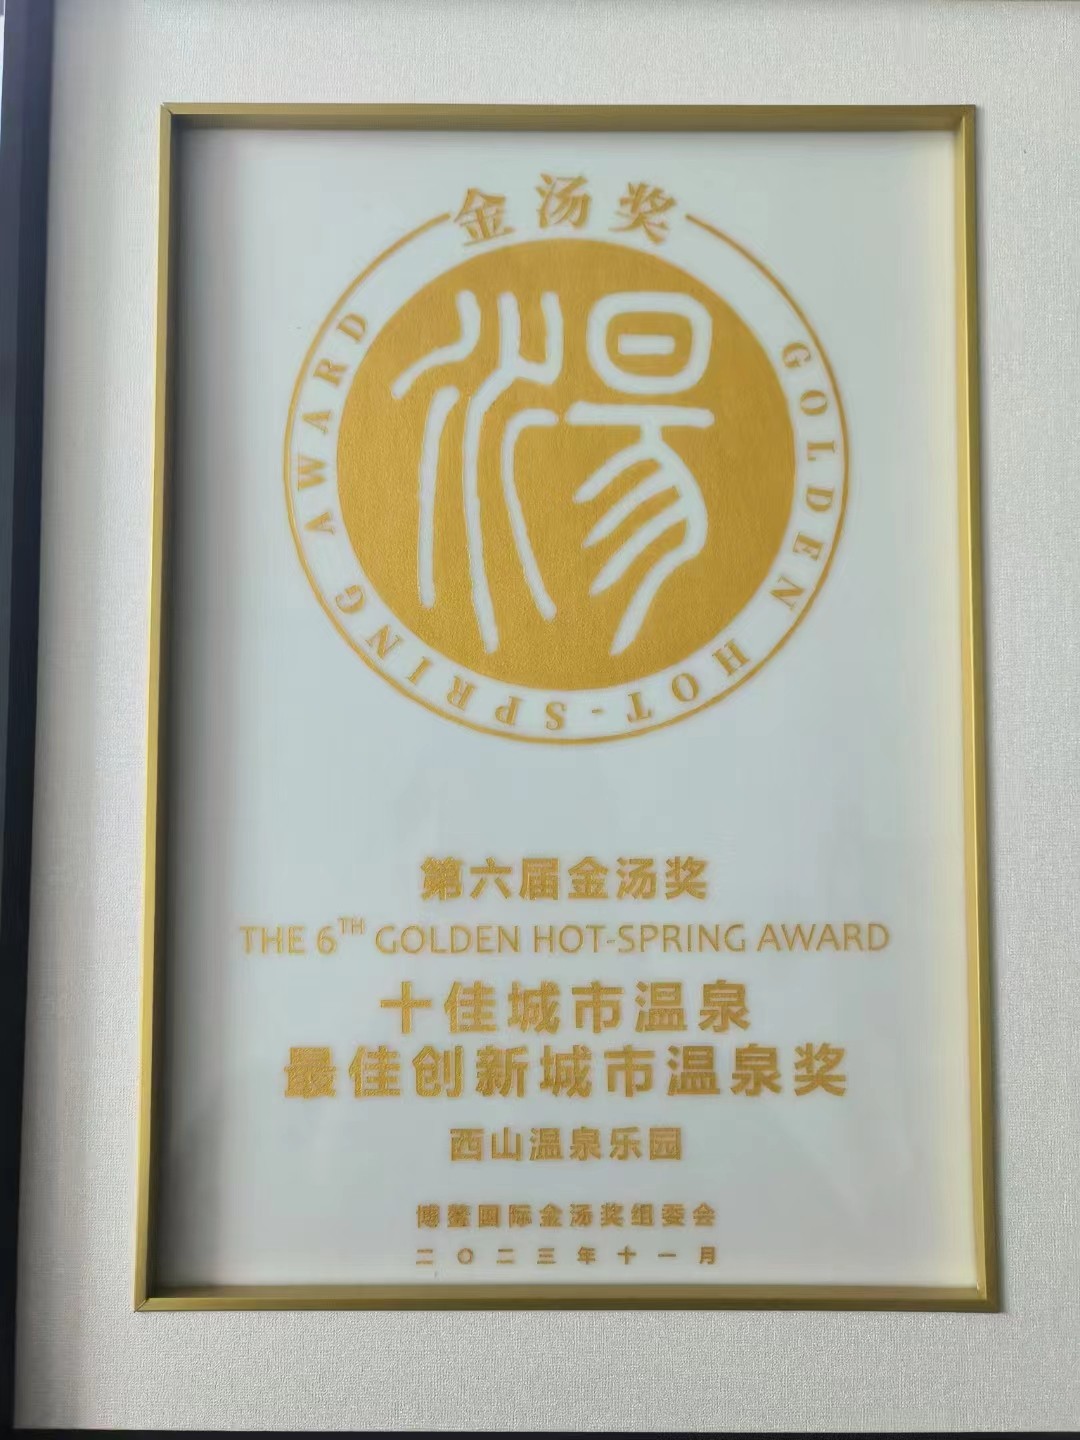 西山温泉荣获第六届金汤奖“最佳创新城市温泉奖”